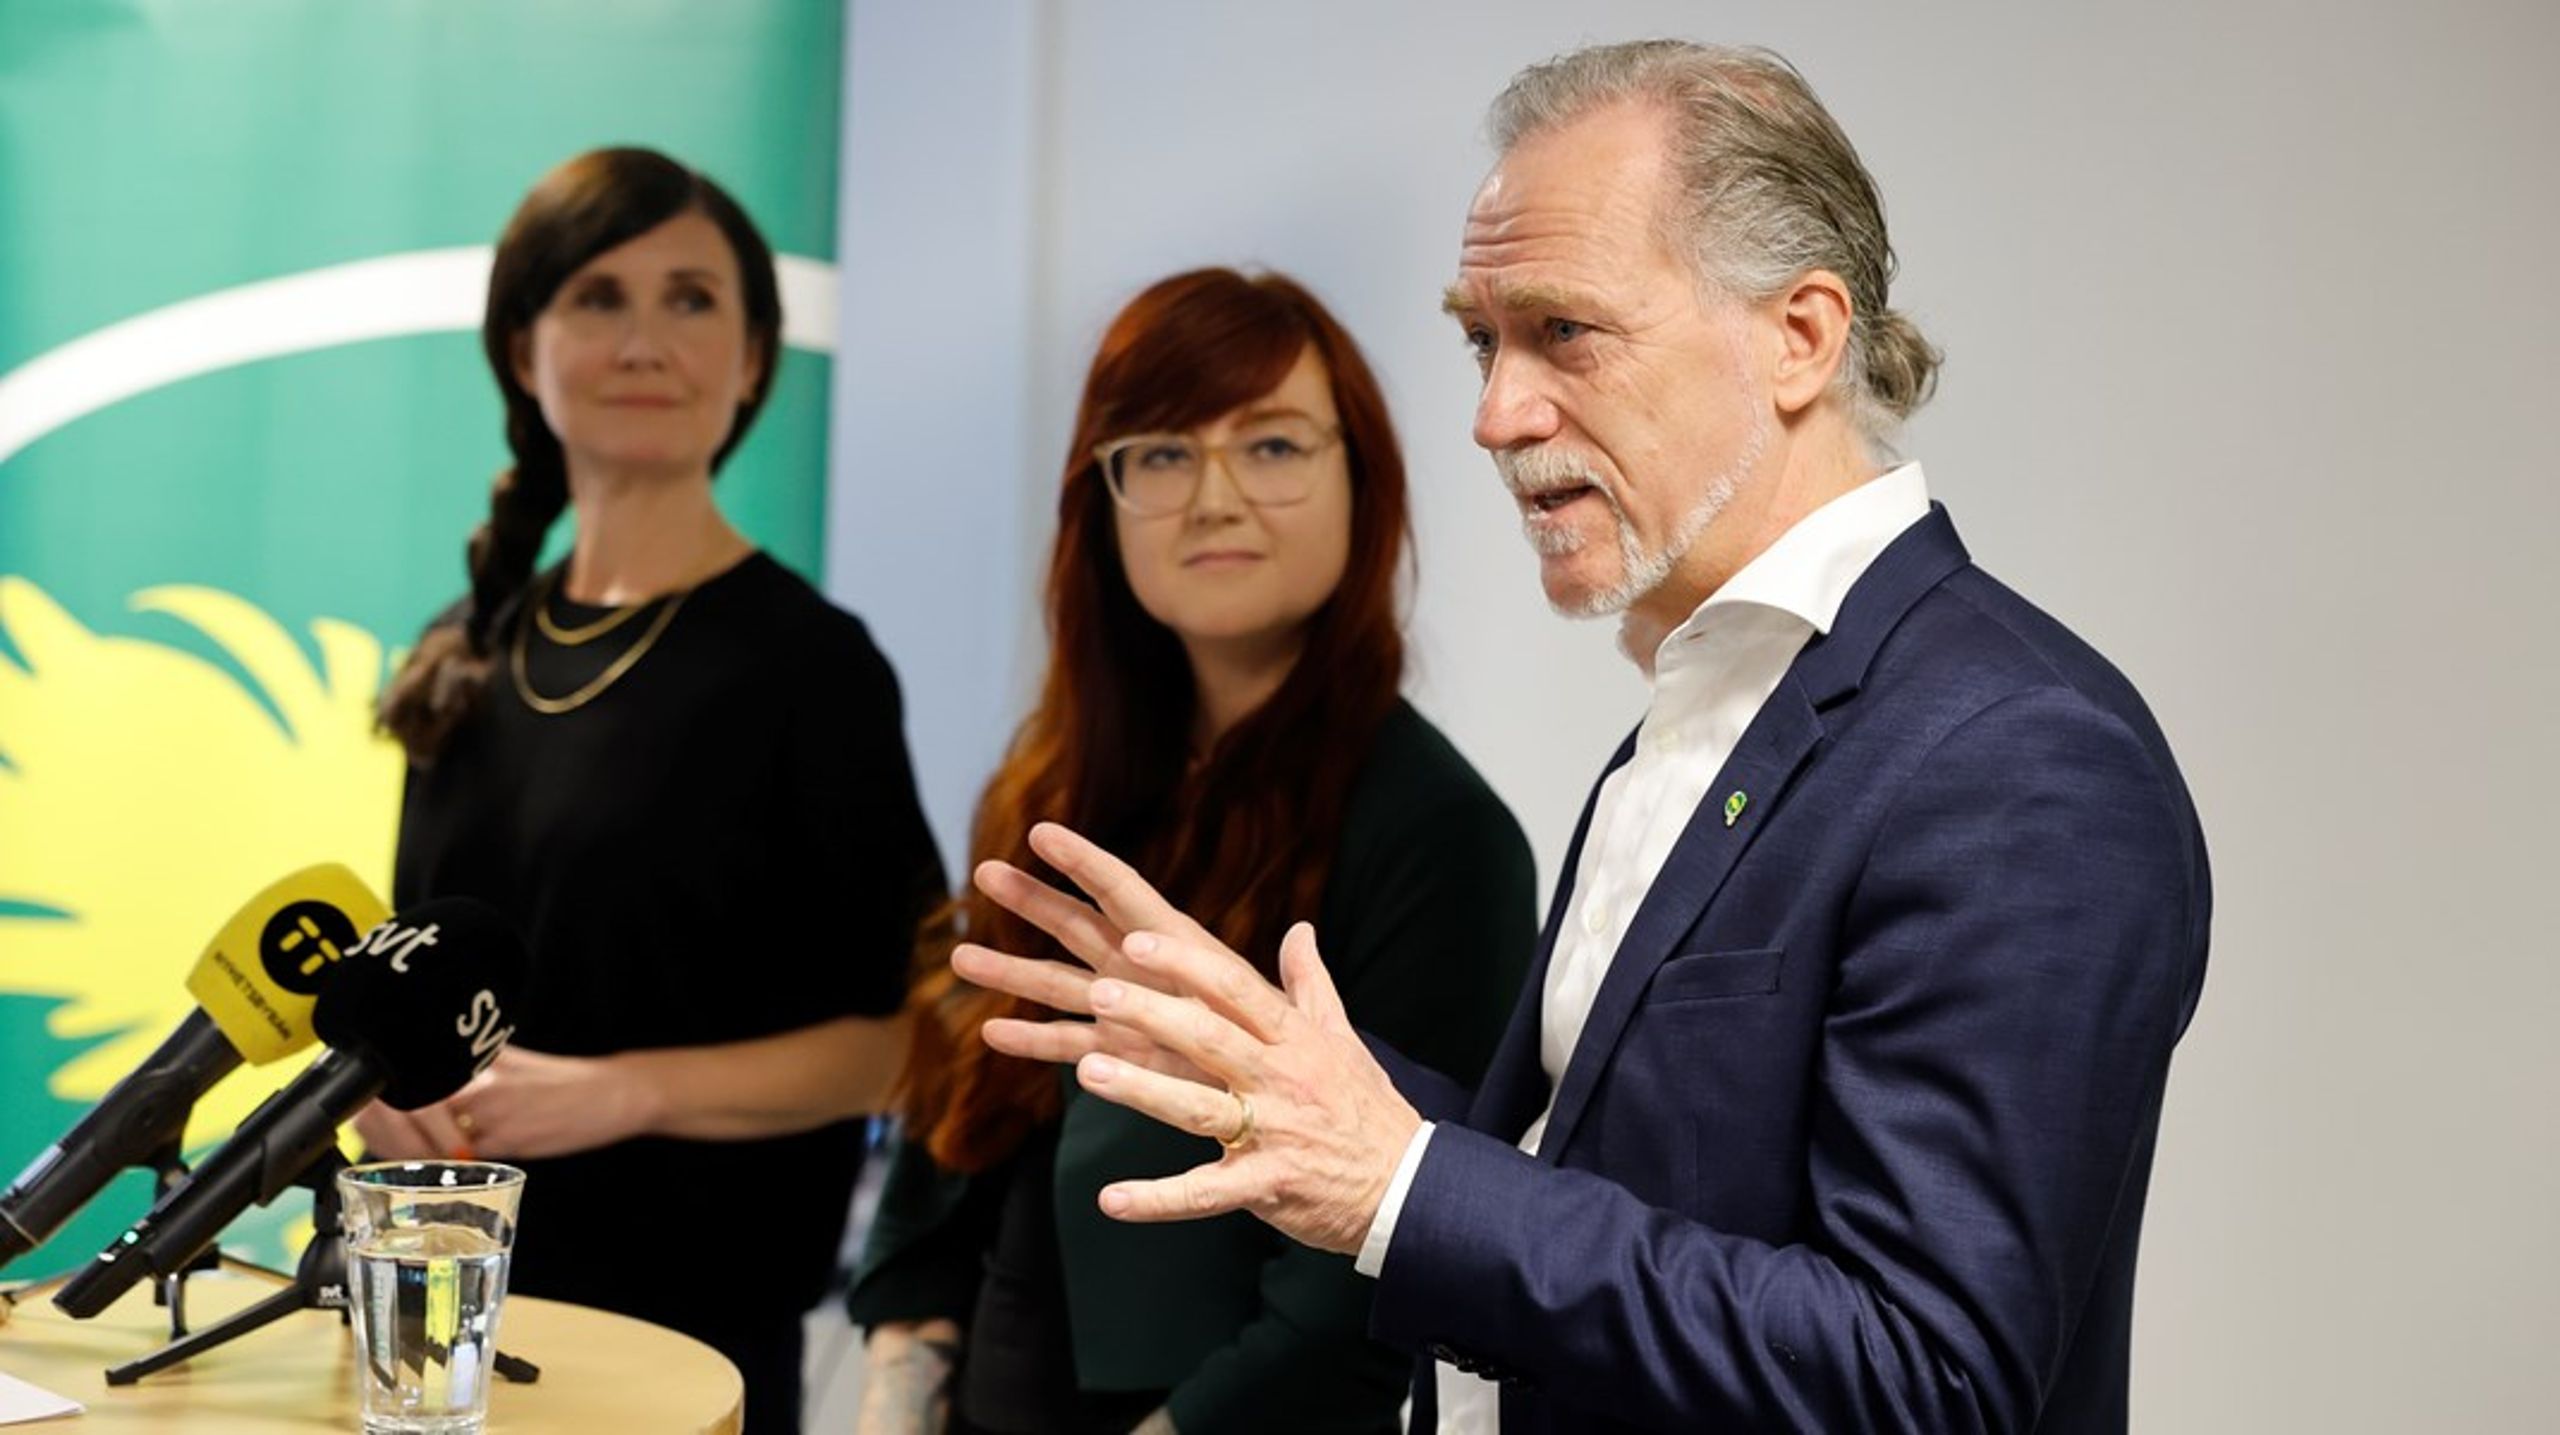 Riksdagsledamoten och partiets trafikpolitiska talesperson Daniel Helldén är Valberedningens förslag till nytt språkrör när Per Bolund kliver av i november.